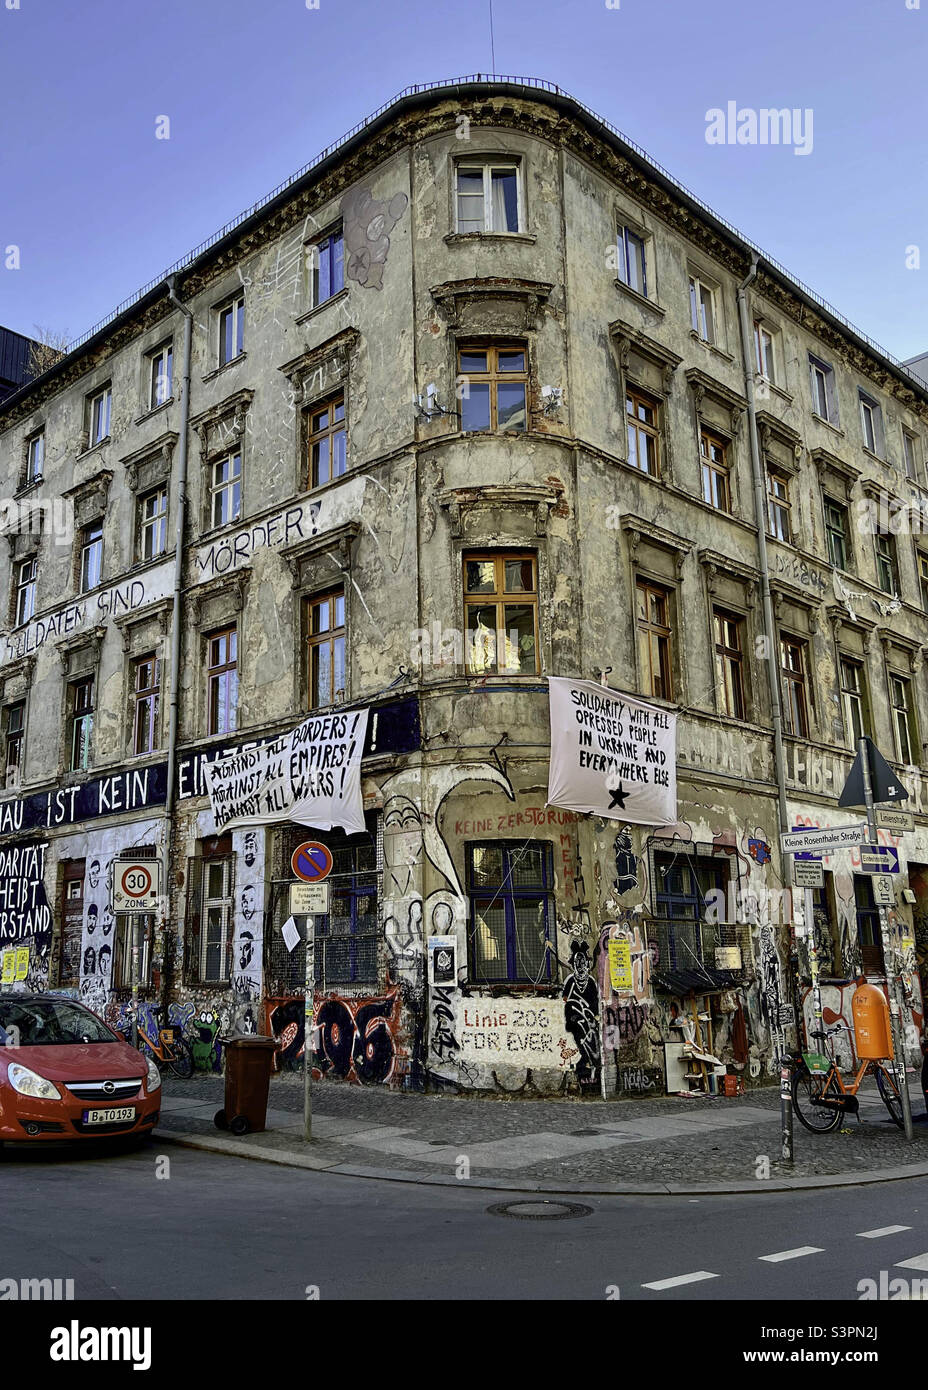 Anti-Kriegs-Banner auf dem alten Gebäude während der russischen Invasion der Ukraine - Linienstraße 206, Mitte, Berlin, Deutschland Stockfoto